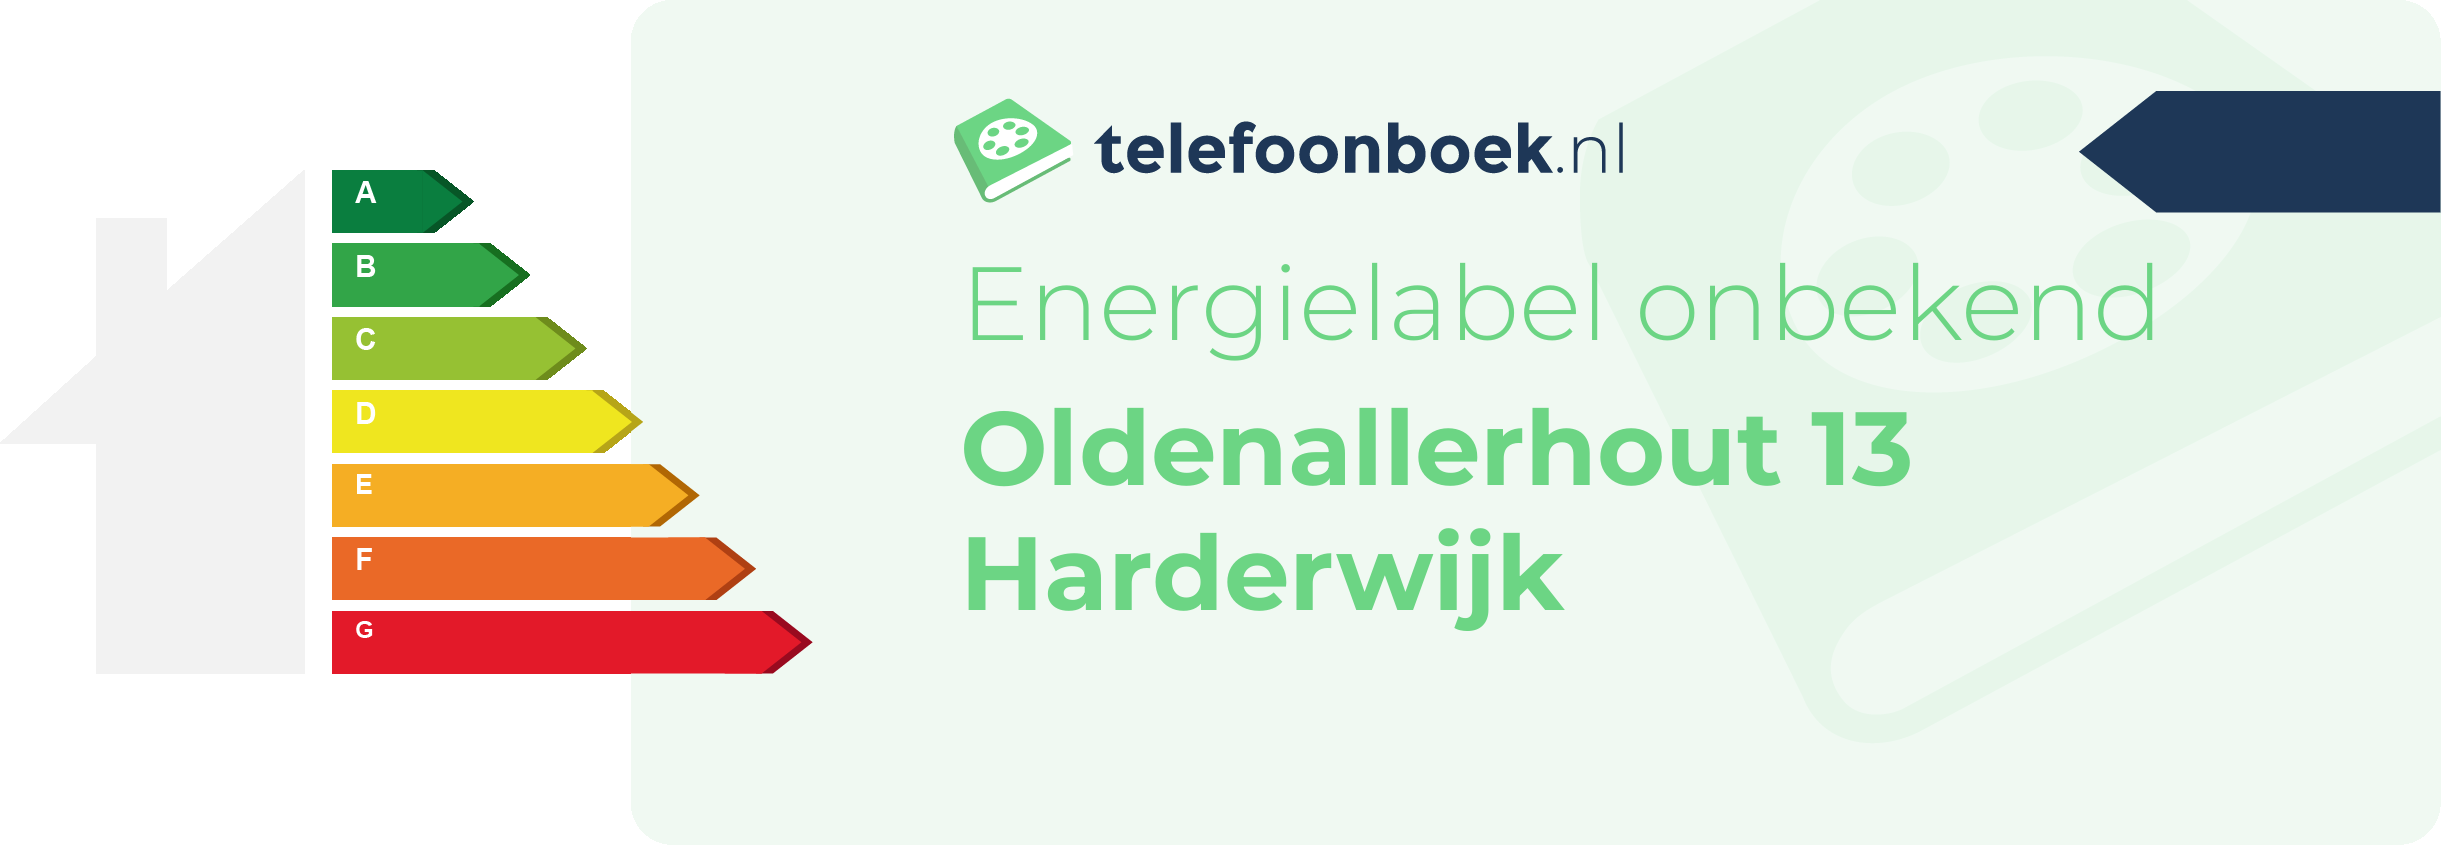 Energielabel Oldenallerhout 13 Harderwijk